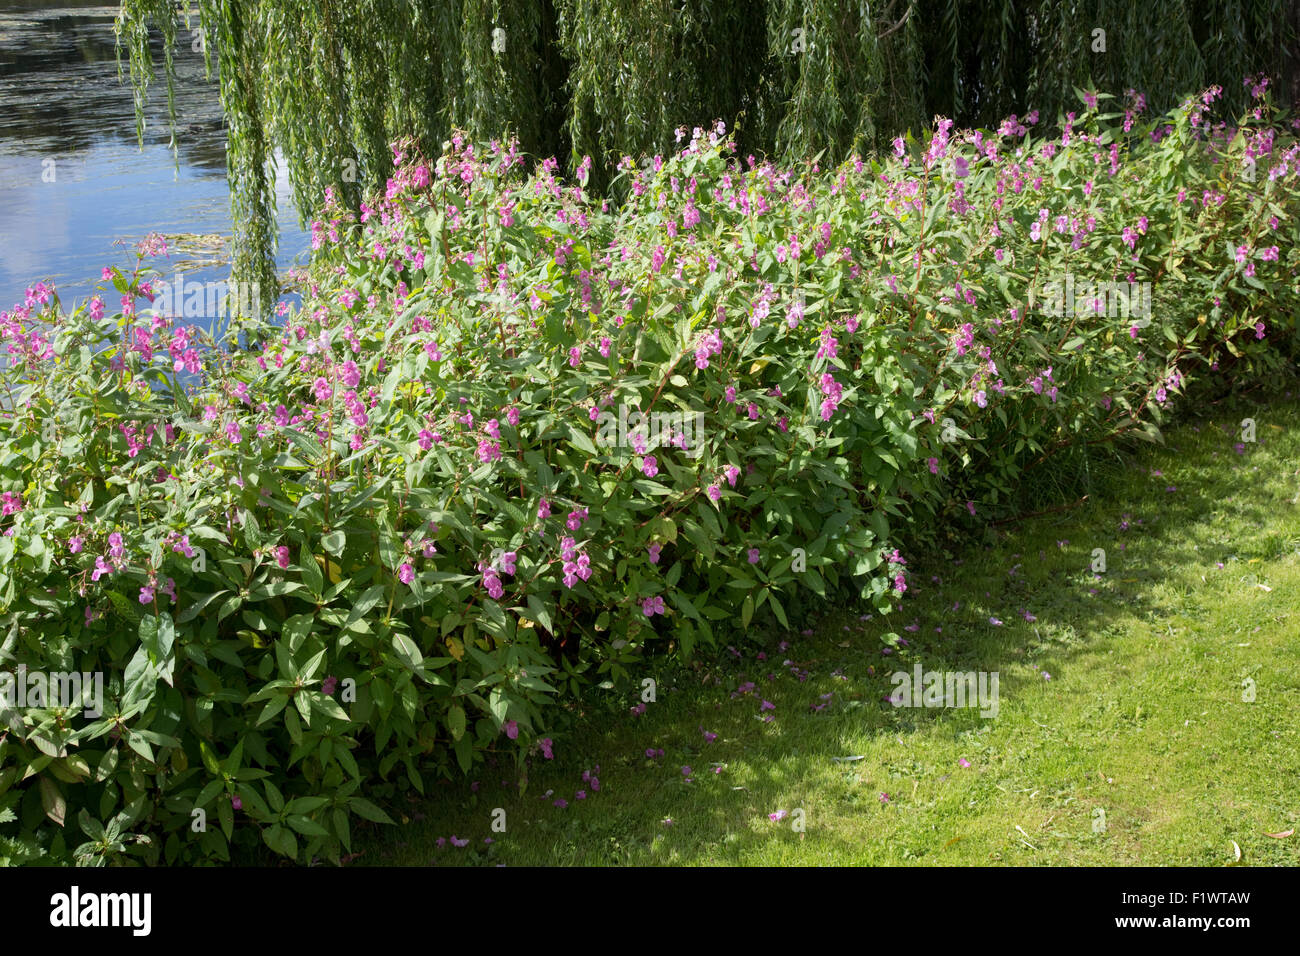 Himalayan piante Balsamina Impatiens glandulifera invade rive del fiume Avon Stoneleigh Abbey Regno Unito Foto Stock